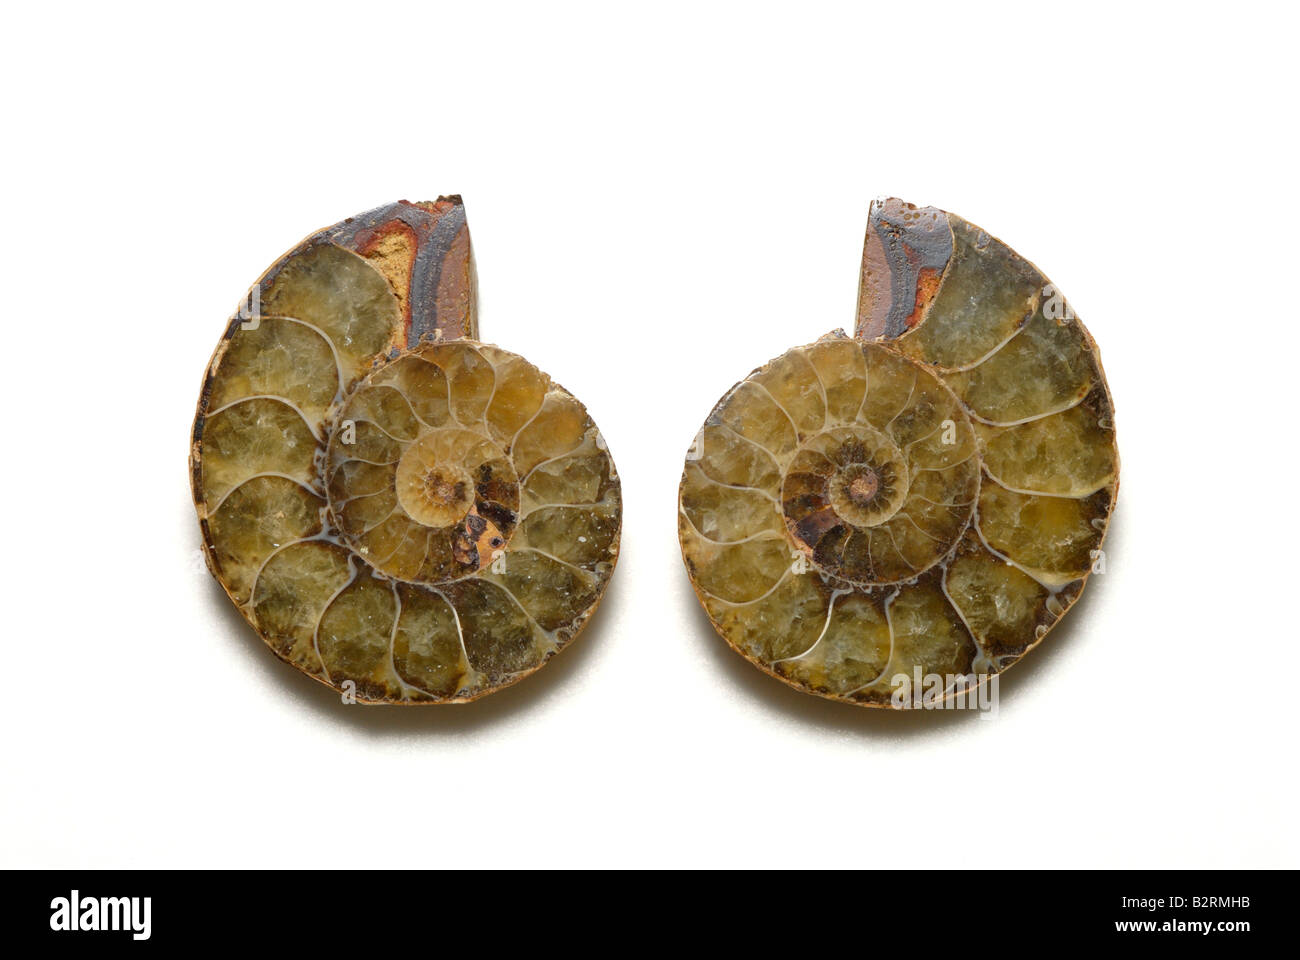 Vue interne d'un fossile d'ammonite Perisphinctes sectionnés sp de Madagascar Jurassique Banque D'Images